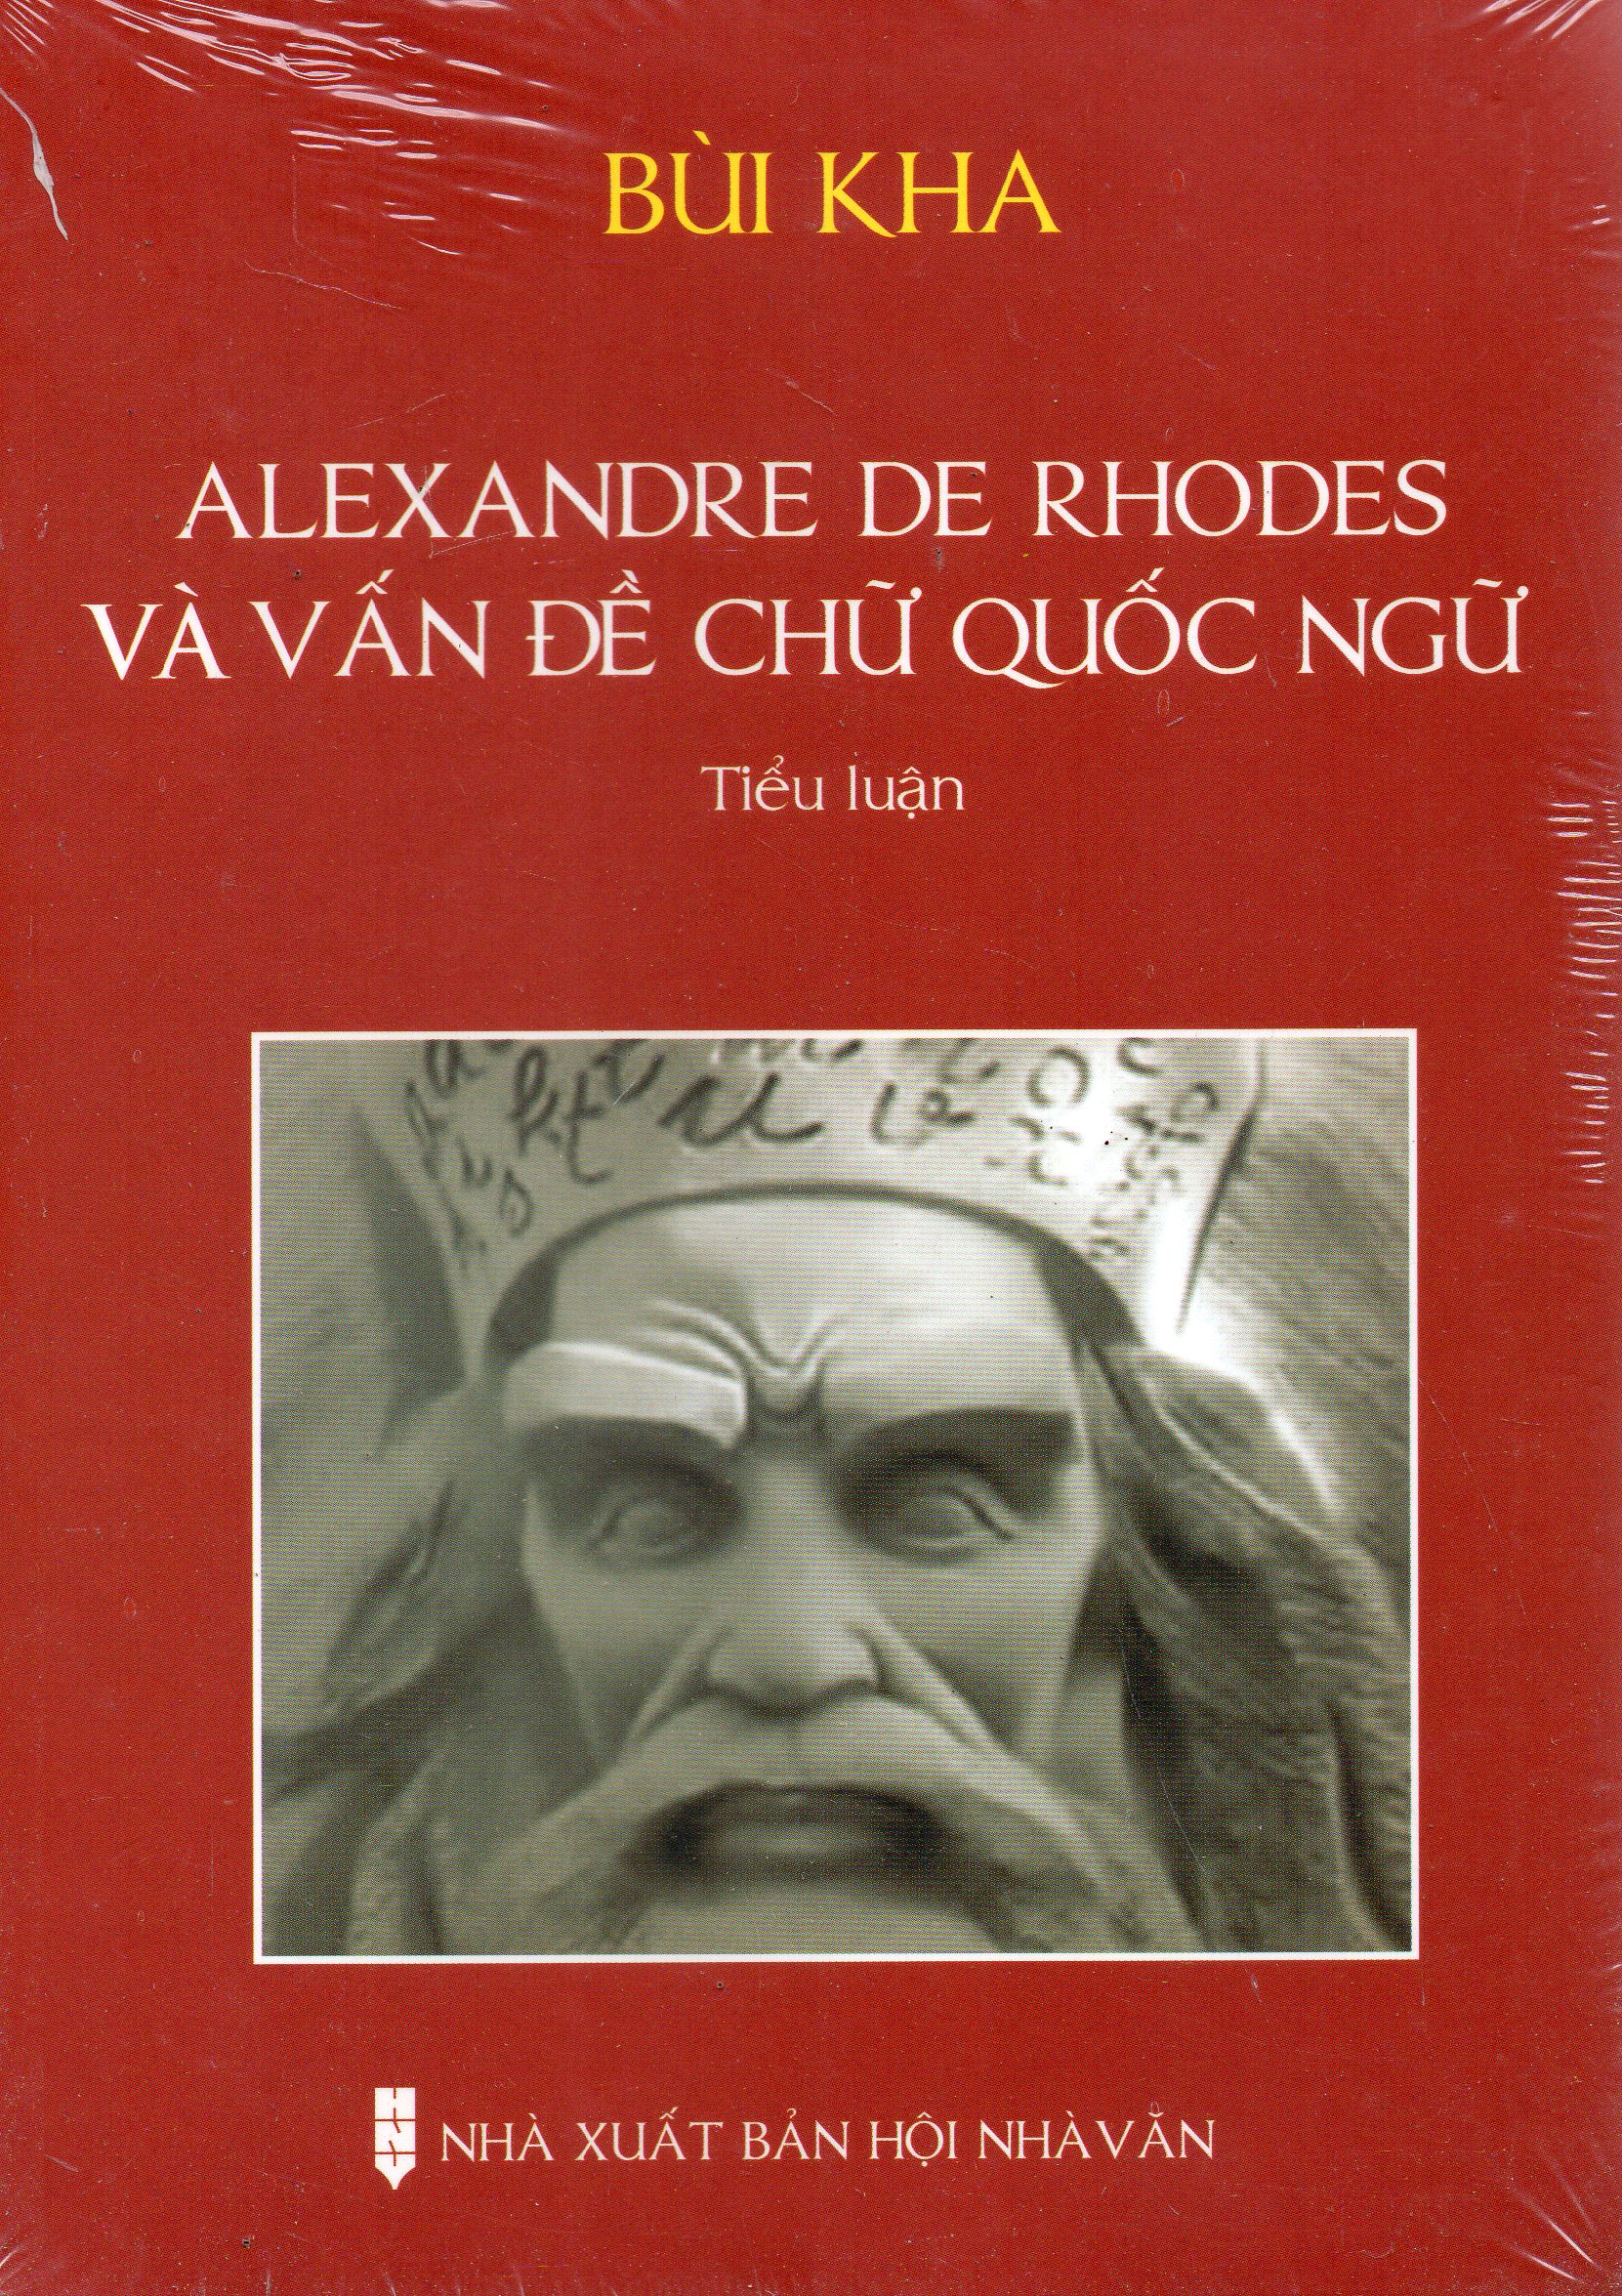 Alexandre De Rhodes và vấn đề chữ quốc ngữ - Bùi Kha